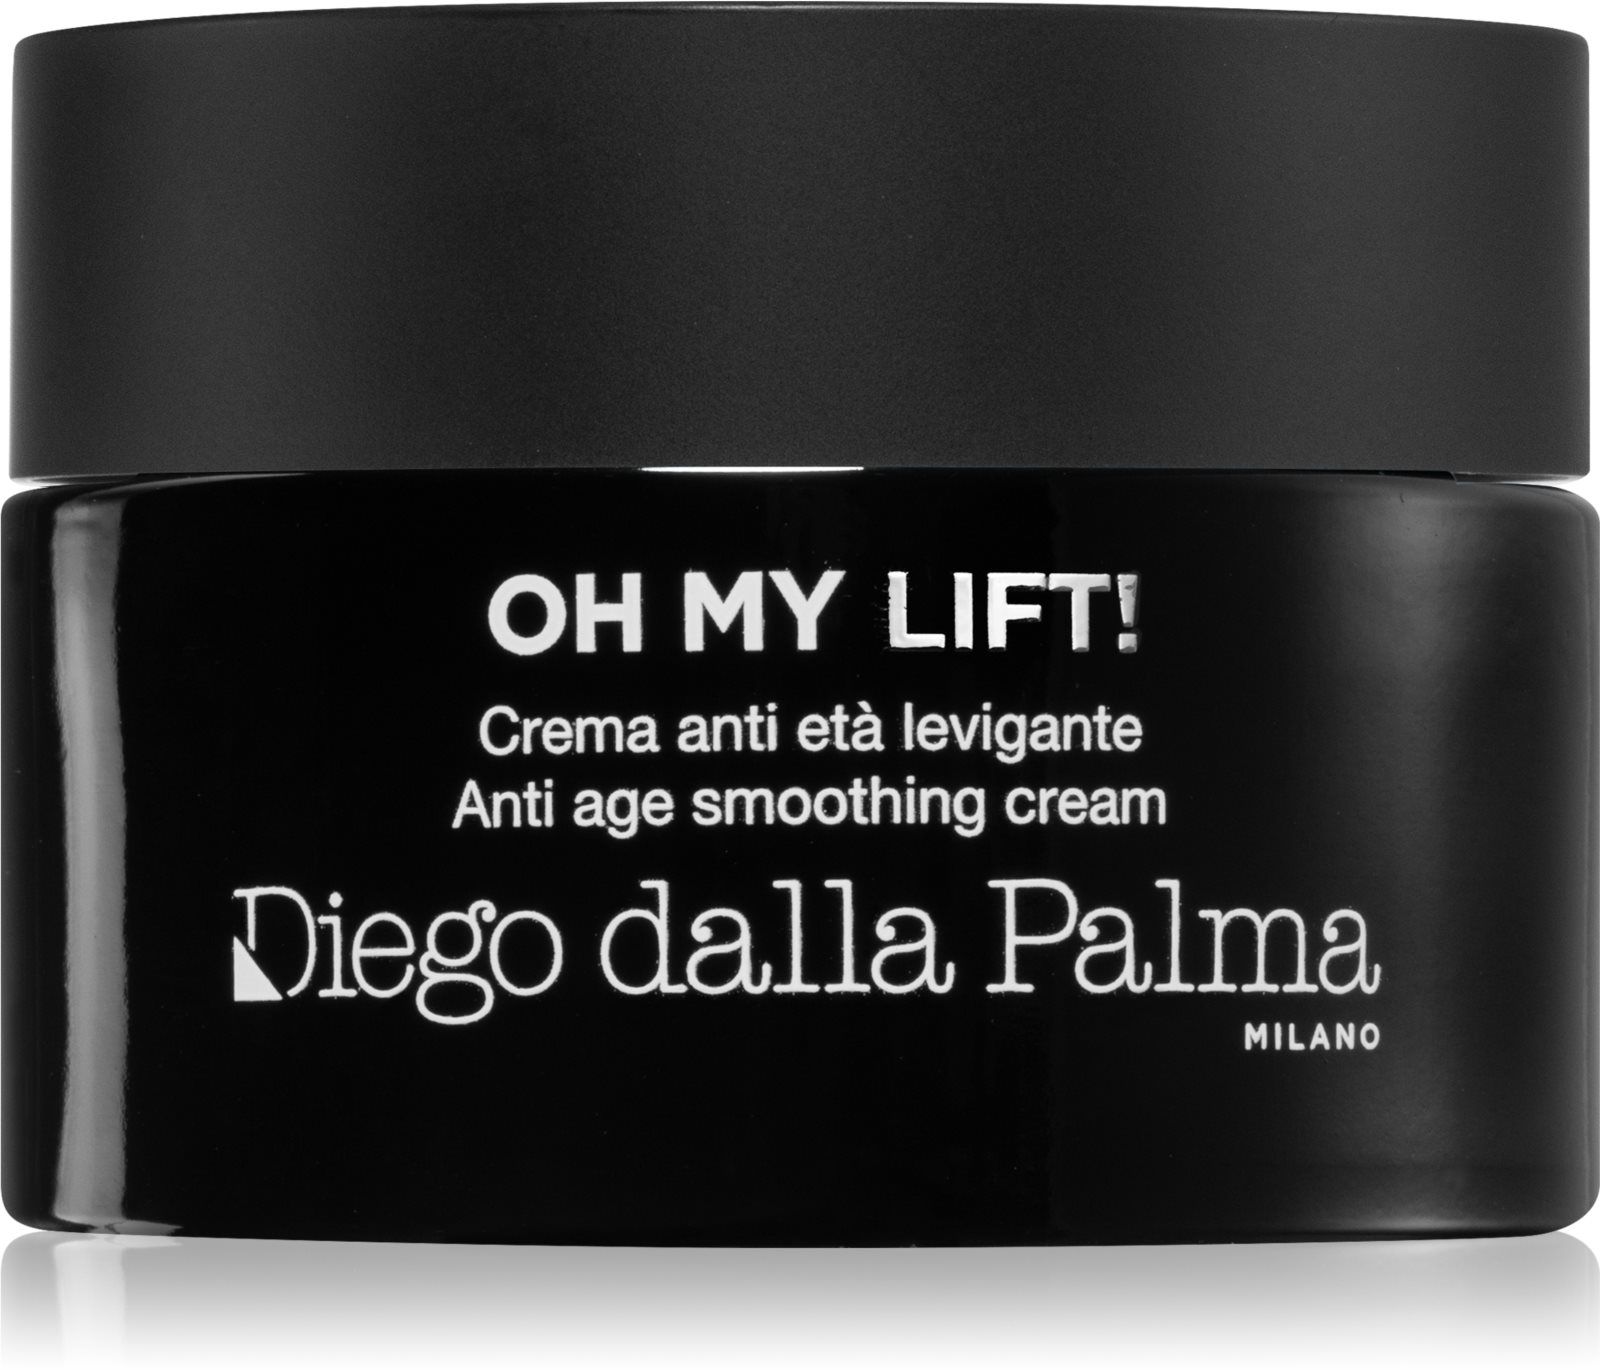 Diego dalla Palma Oh My Lift! Anti Age Smoothing Cream - дневной и ночной  крем от морщин / 50 ml - купить с доставкой по выгодным ценам в  интернет-магазине OZON (1349051847)